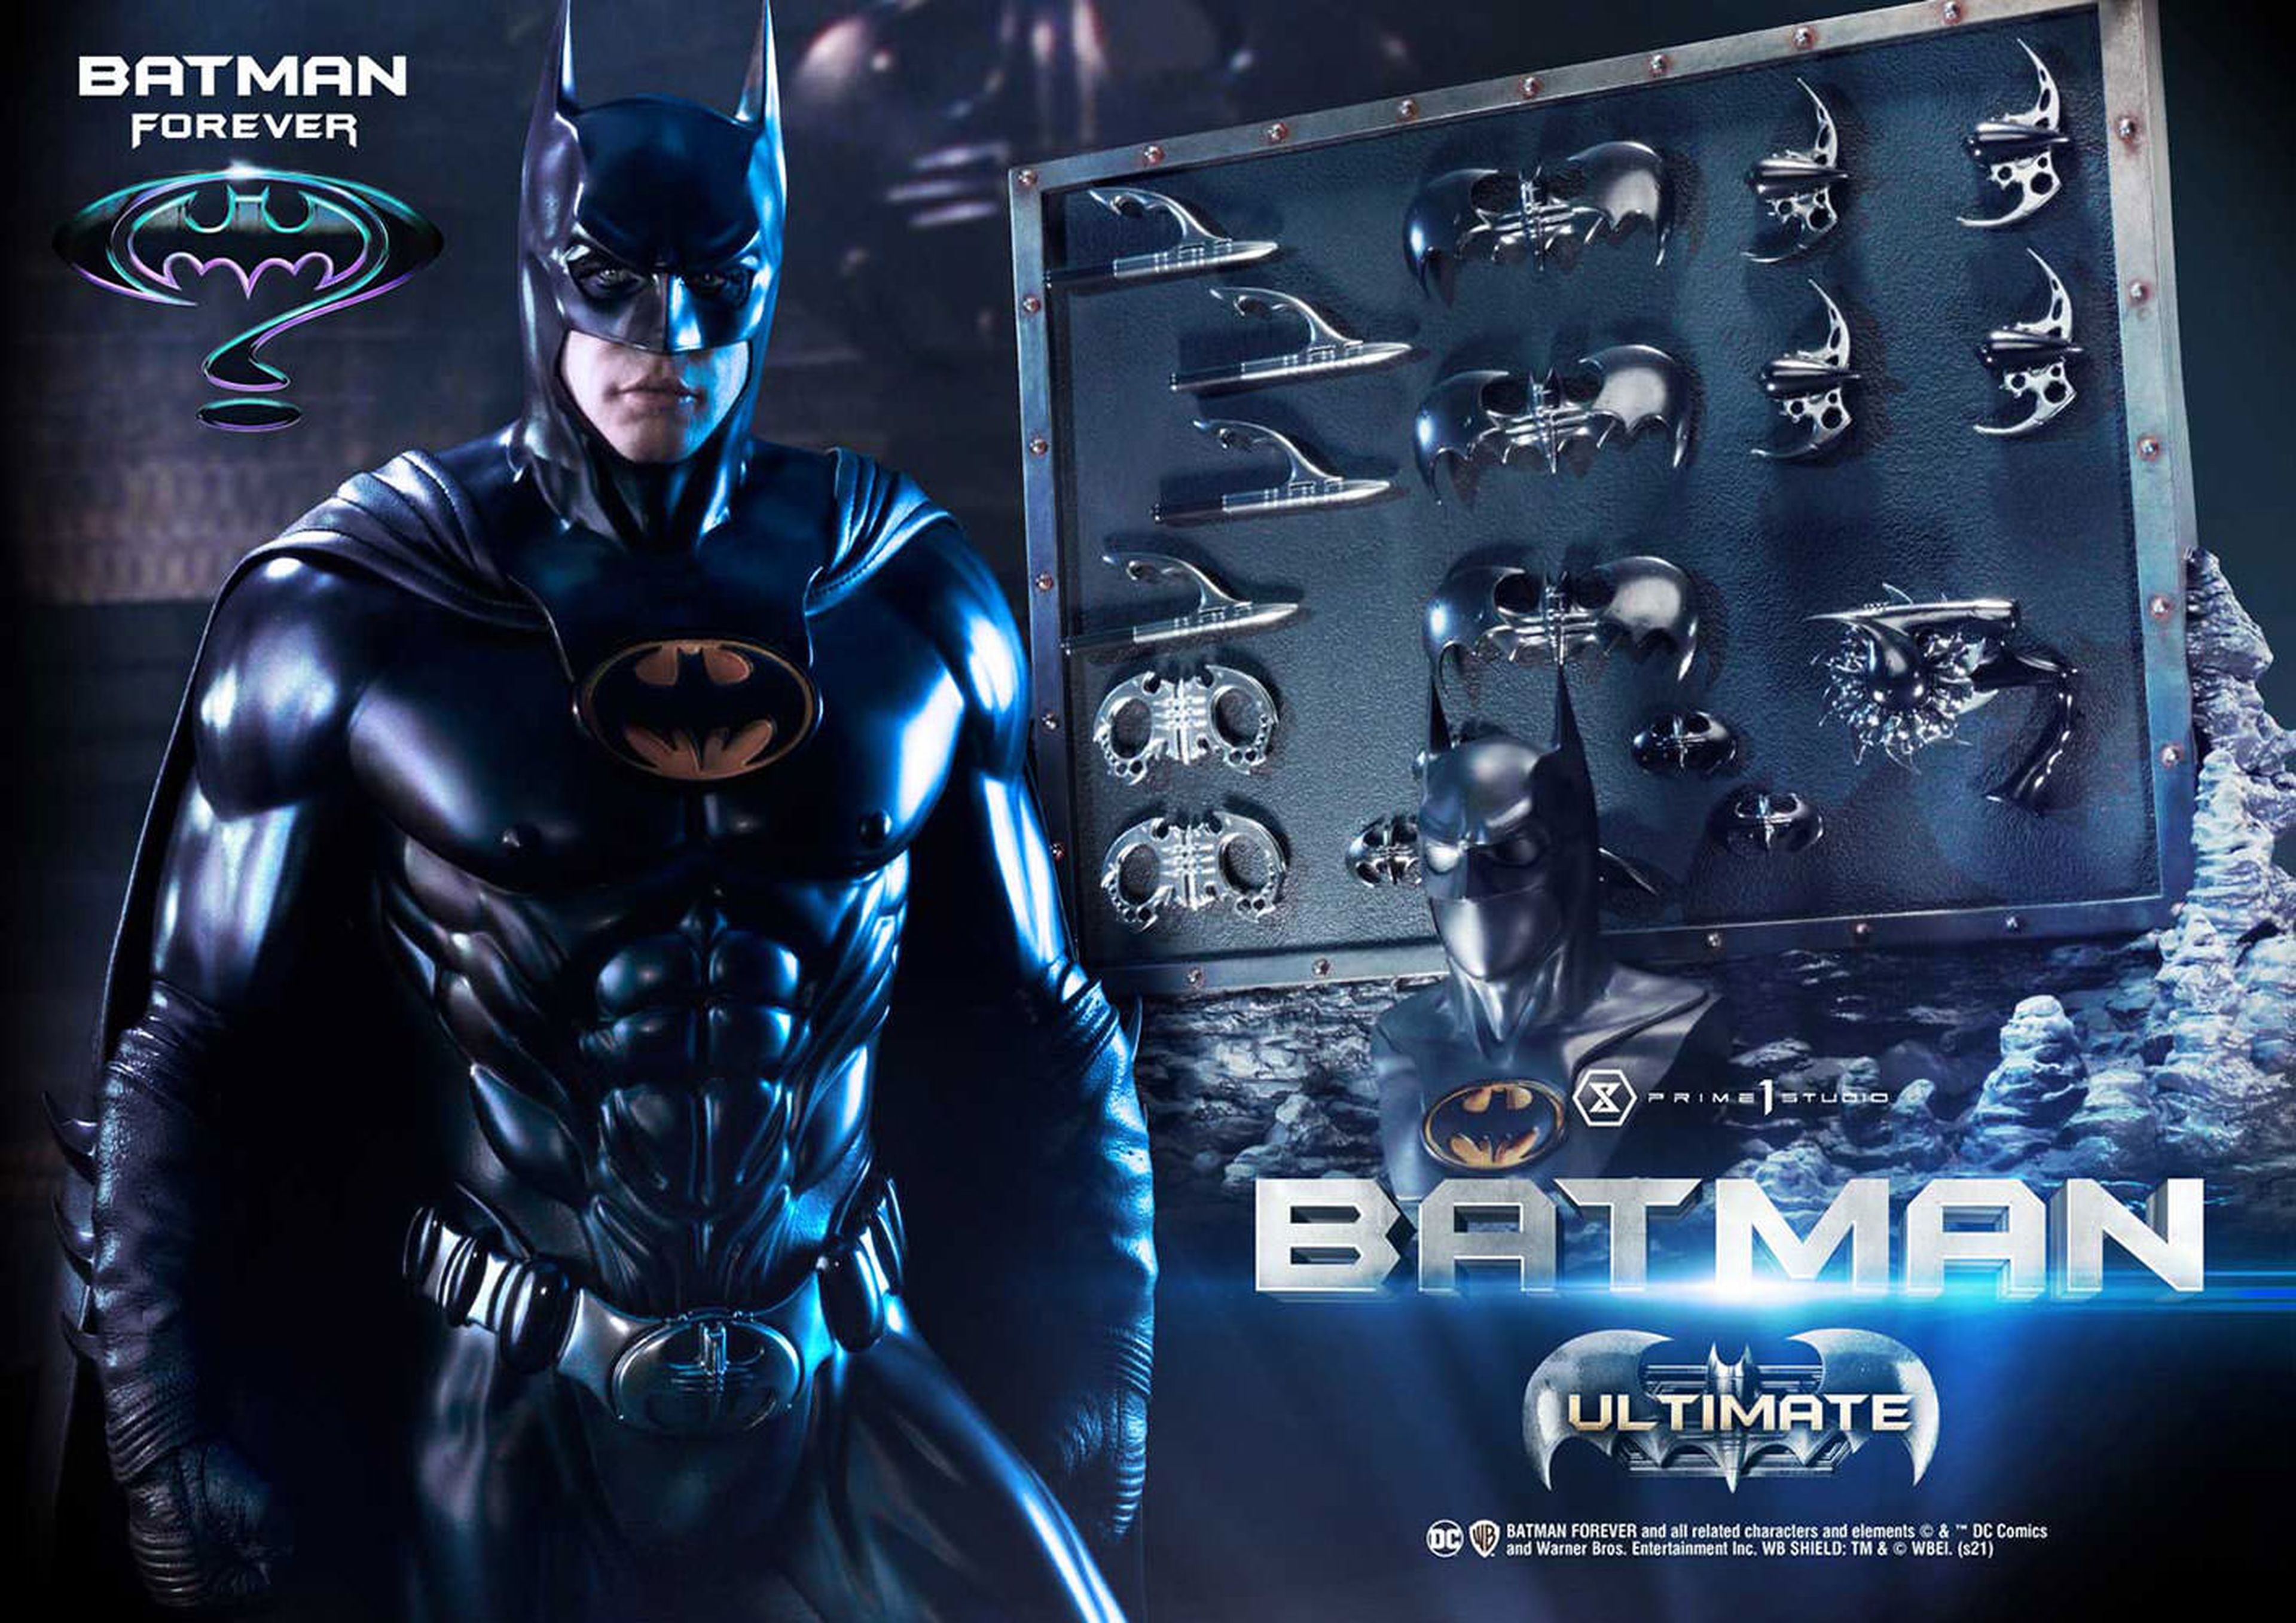 Batman Forever - Estatua de Batman de Prime 1 Studios